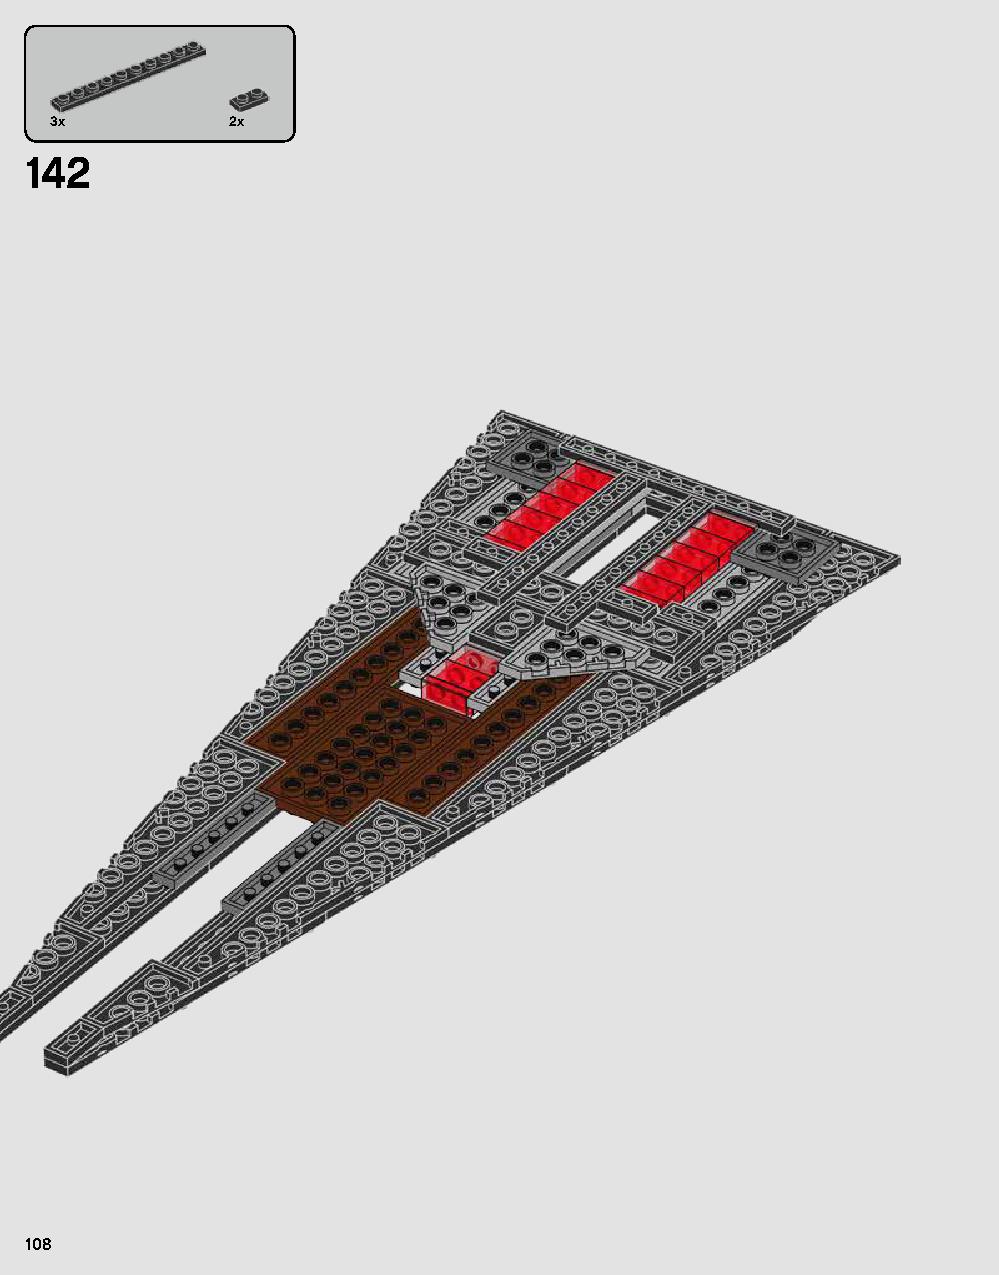 ダース・ベイダーの城 75251 レゴの商品情報 レゴの説明書・組立方法 108 page